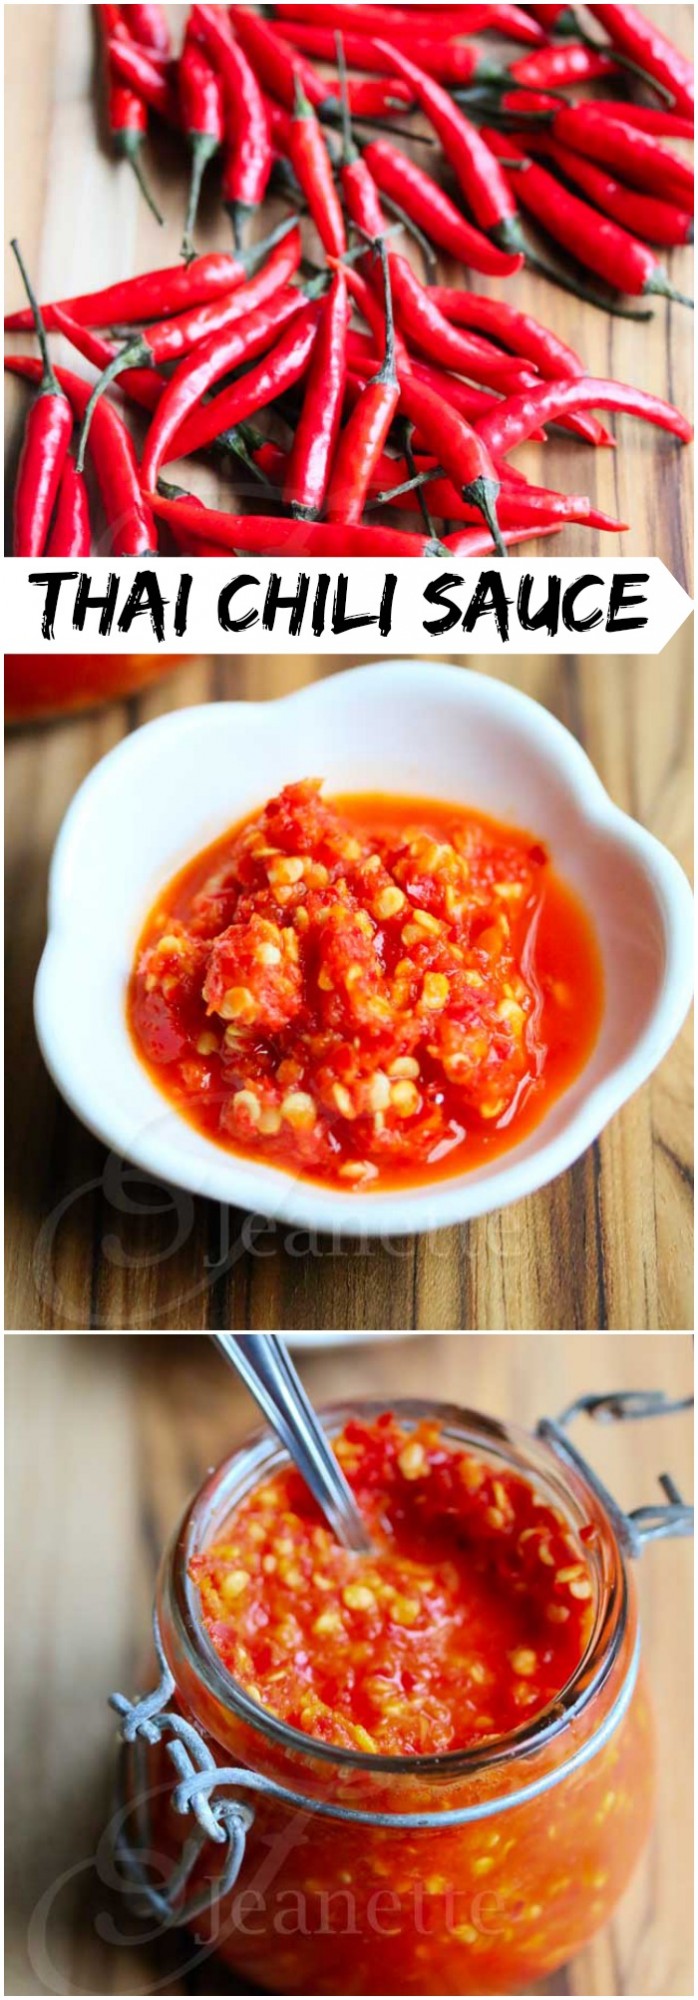 Fresh Thai Chili Garlic Sauce Recipe